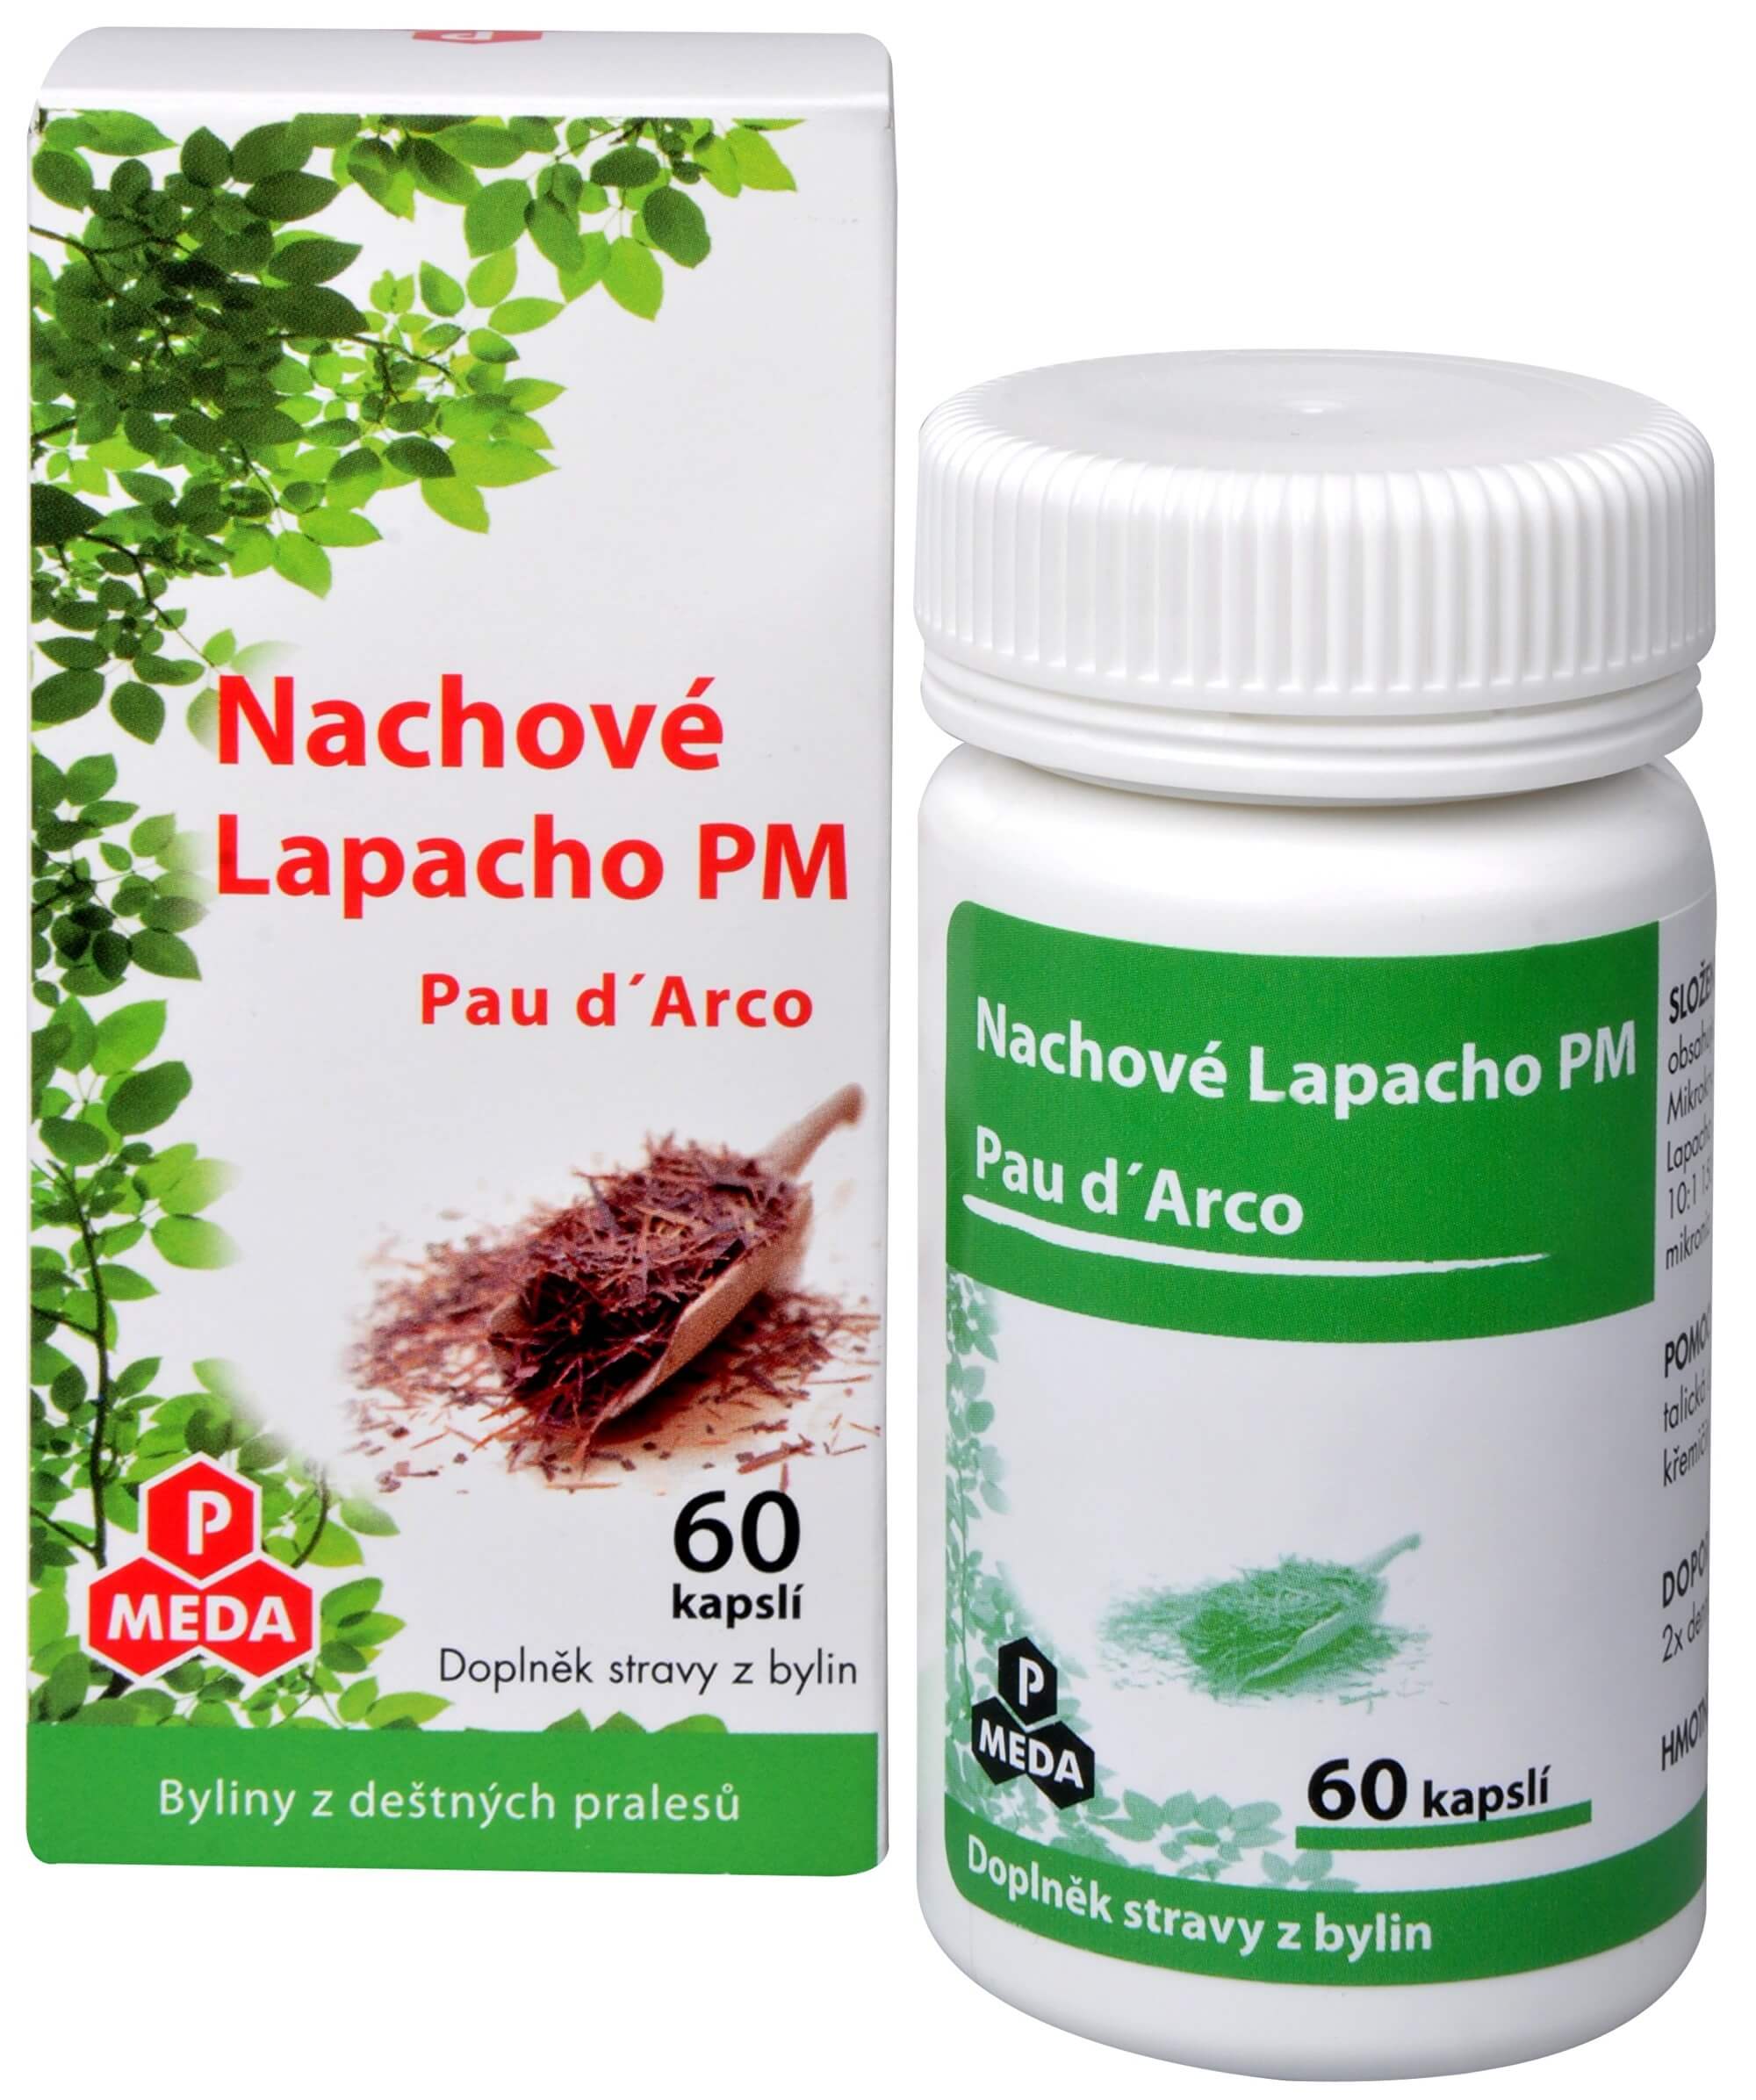 Purus Meda Nachové Lapacho PM (Pau d´Arco) 60 kapslí